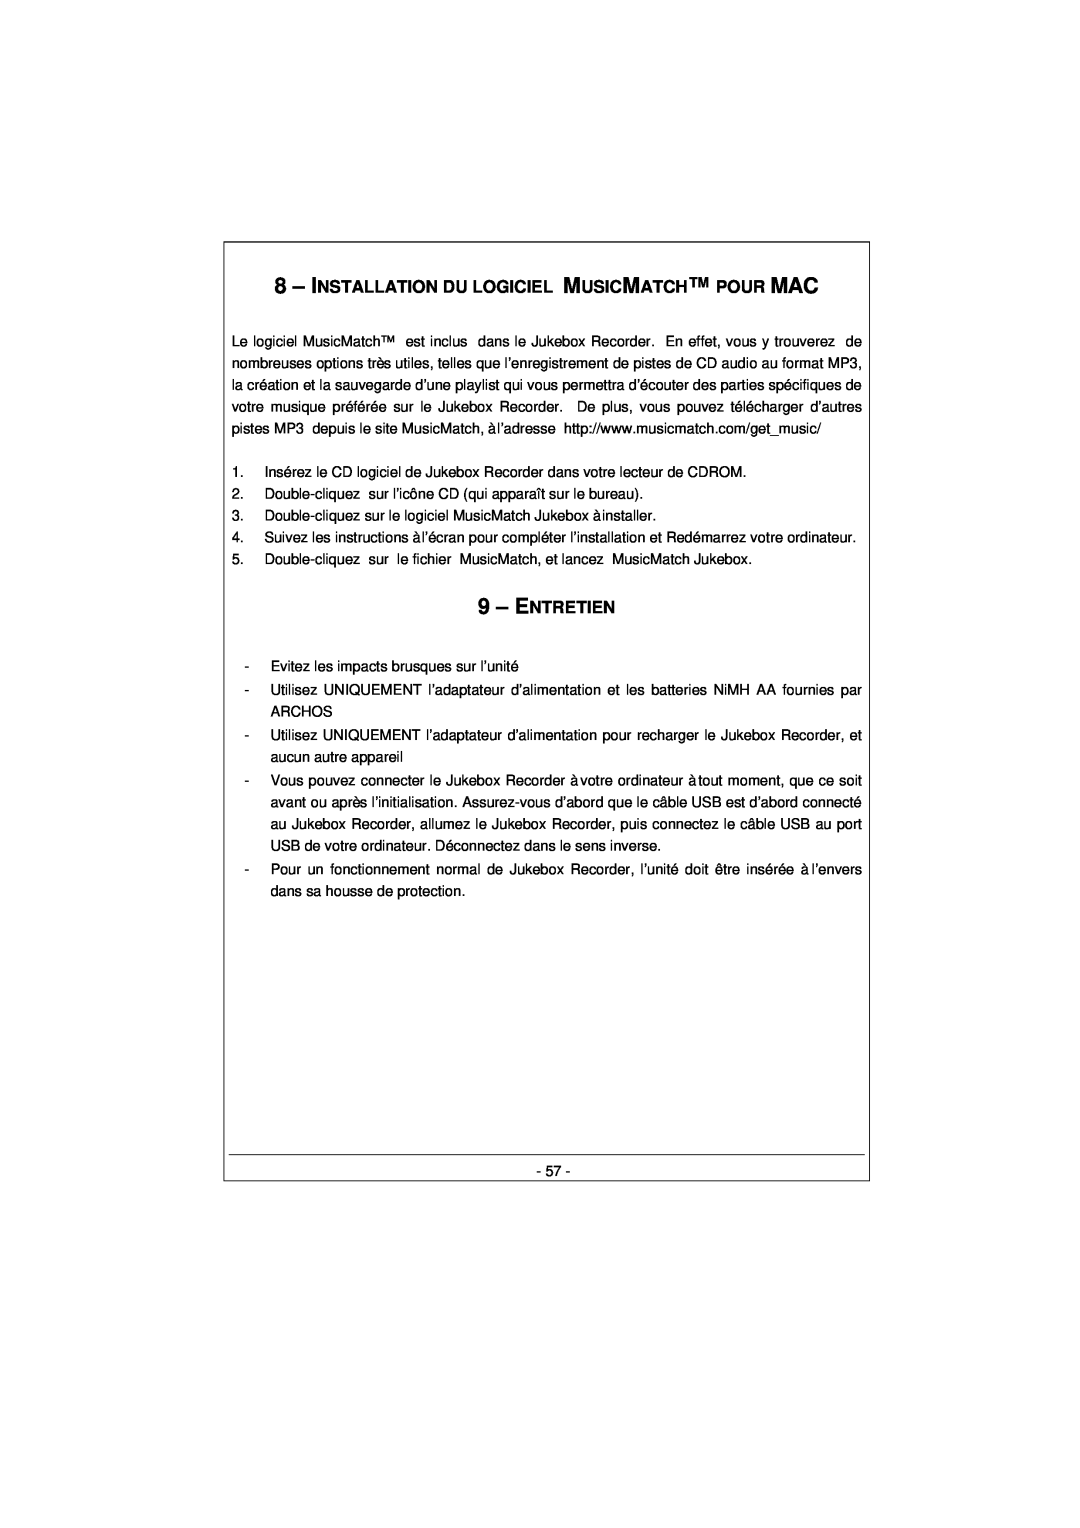 Archos 100628 manual 8– INSTALLATION DU LOGICIEL MUSICMATCH POUR MAC, Entretien 